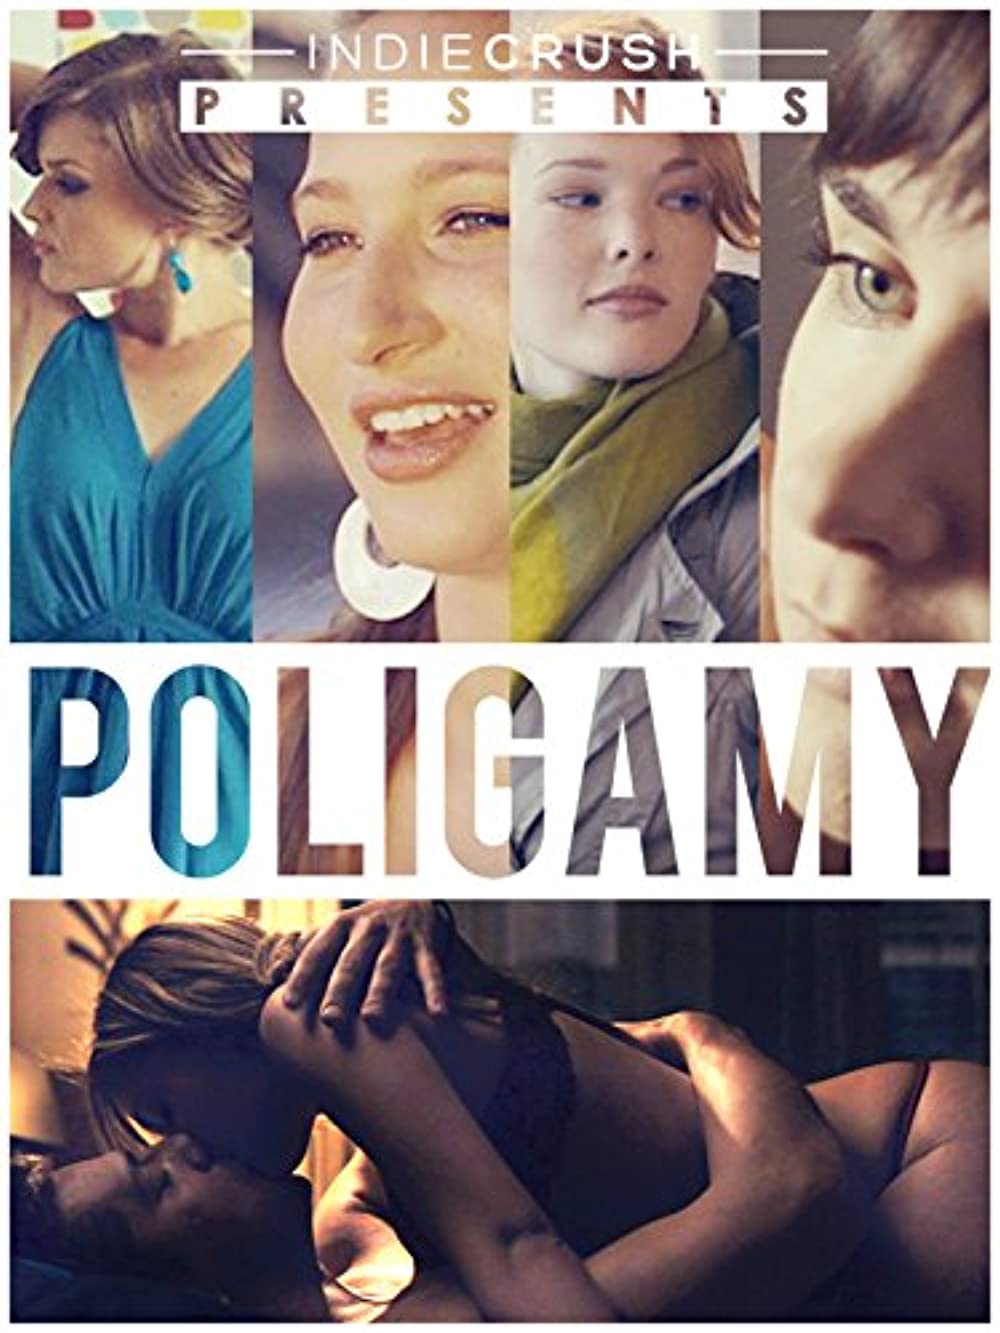 Download Poligamy Movie | Poligamy